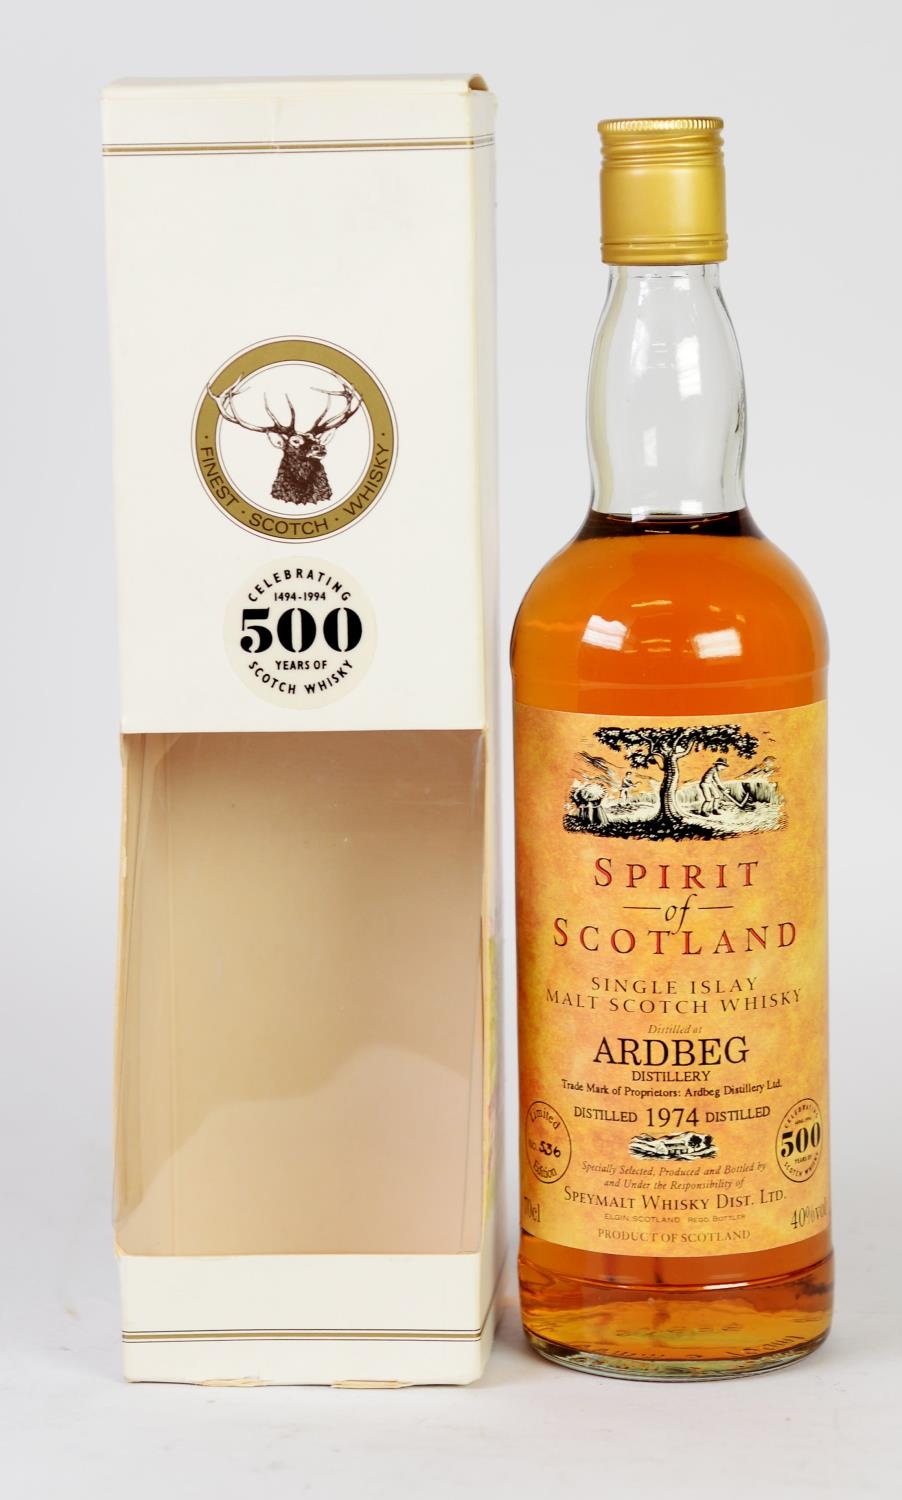 ARDBEG - SPIRIT OF SCOTLAND LIMITED EDITION 70cl BOTTLE OF SINGLE MALT WHISKY, distilled 1974, No - Image 2 of 2